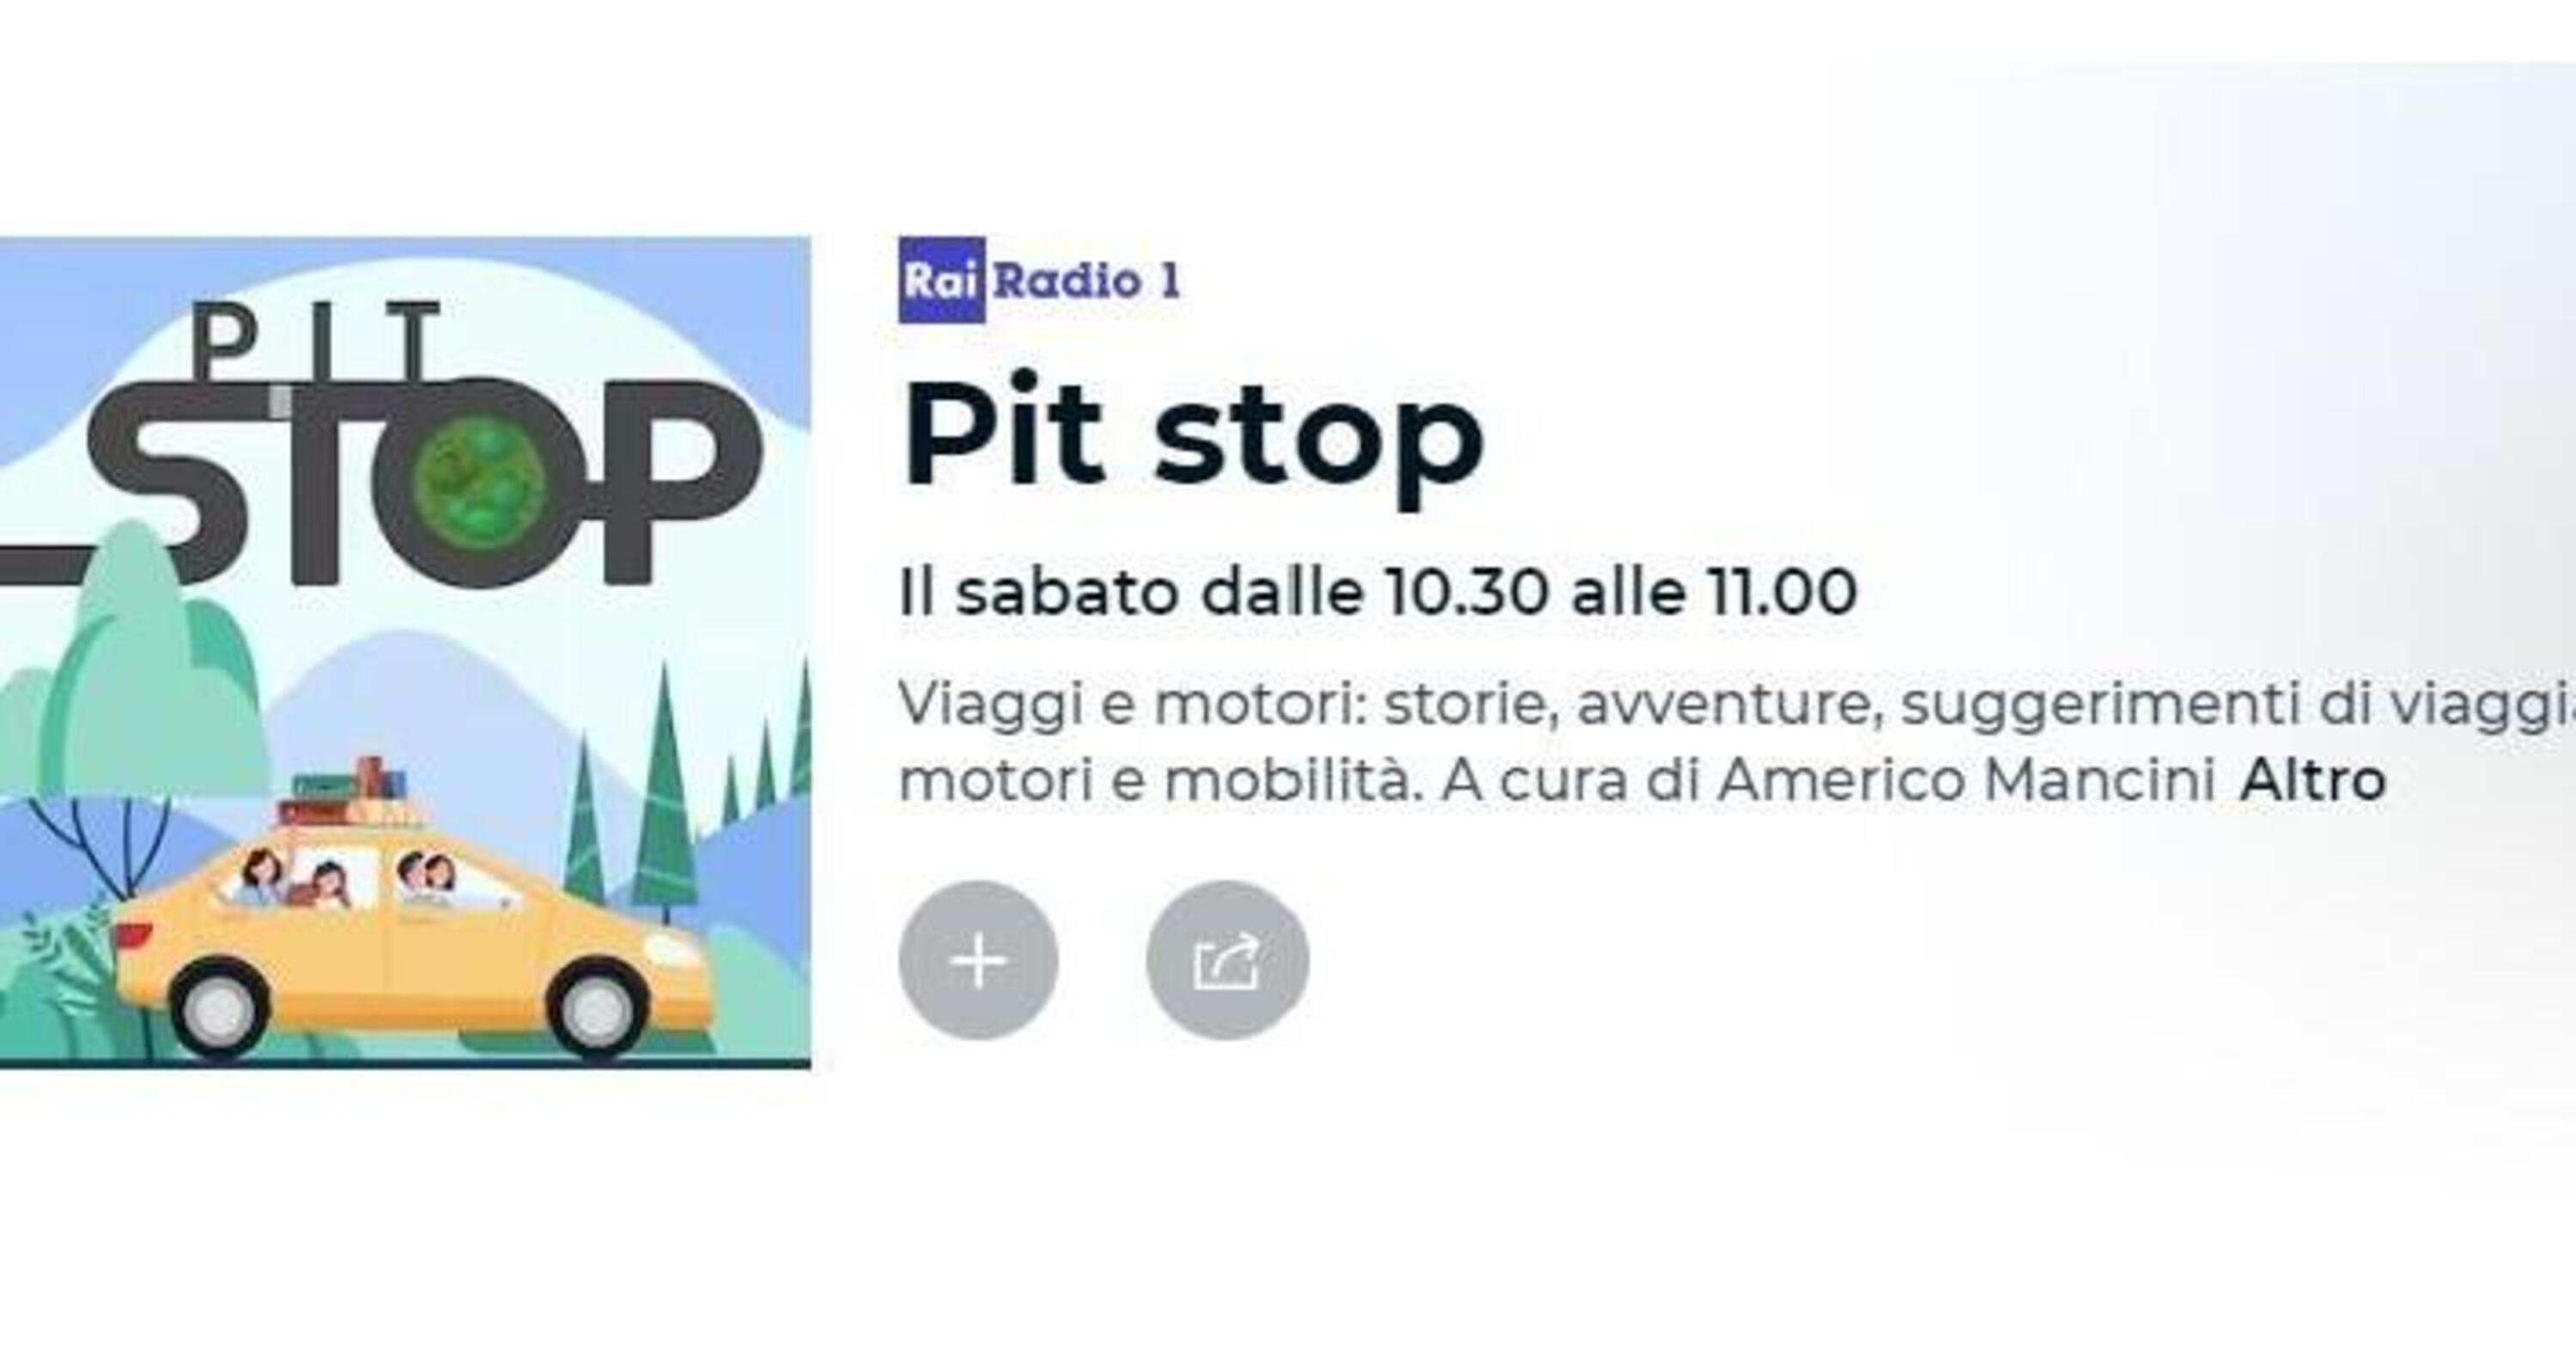 Pit Stop e Automoto.it: i sondaggi alla radio al sabato in diretta su RAI Radiouno [LINK AUDIO]